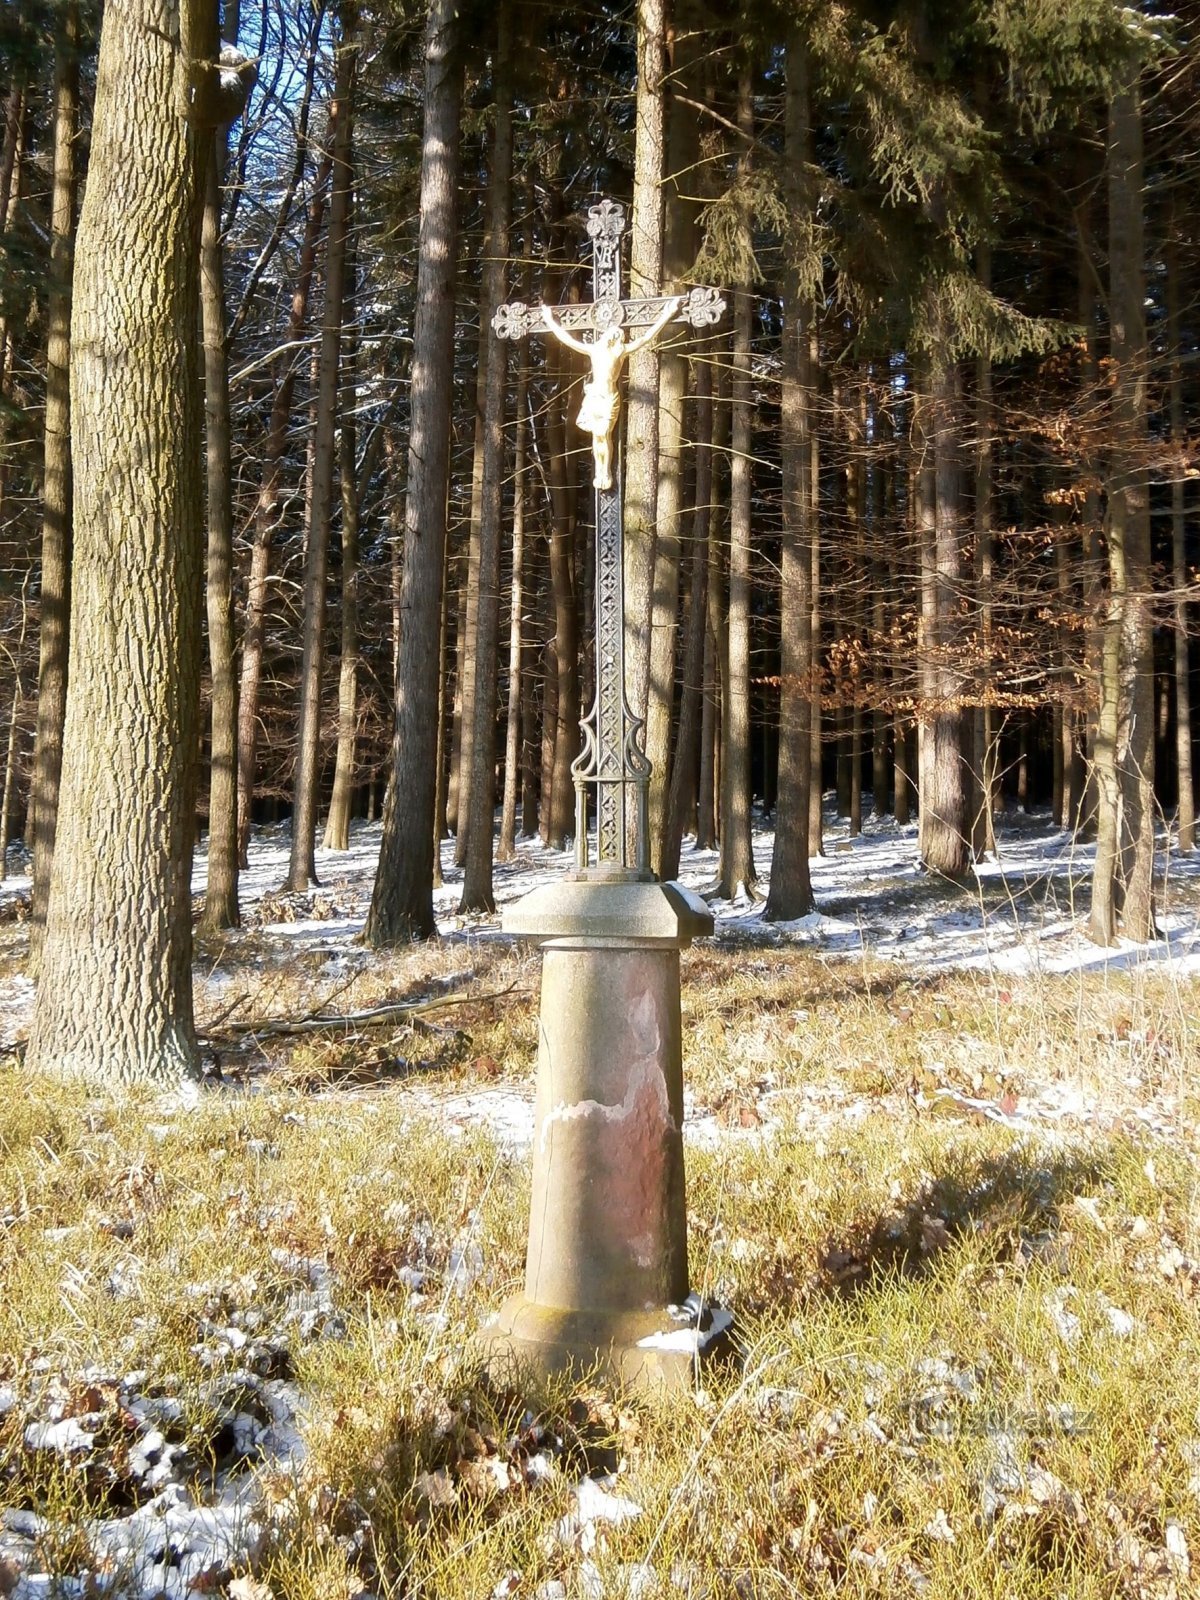 Cruce în pădure la nr. 47 (Proruby, 18.1.2016)